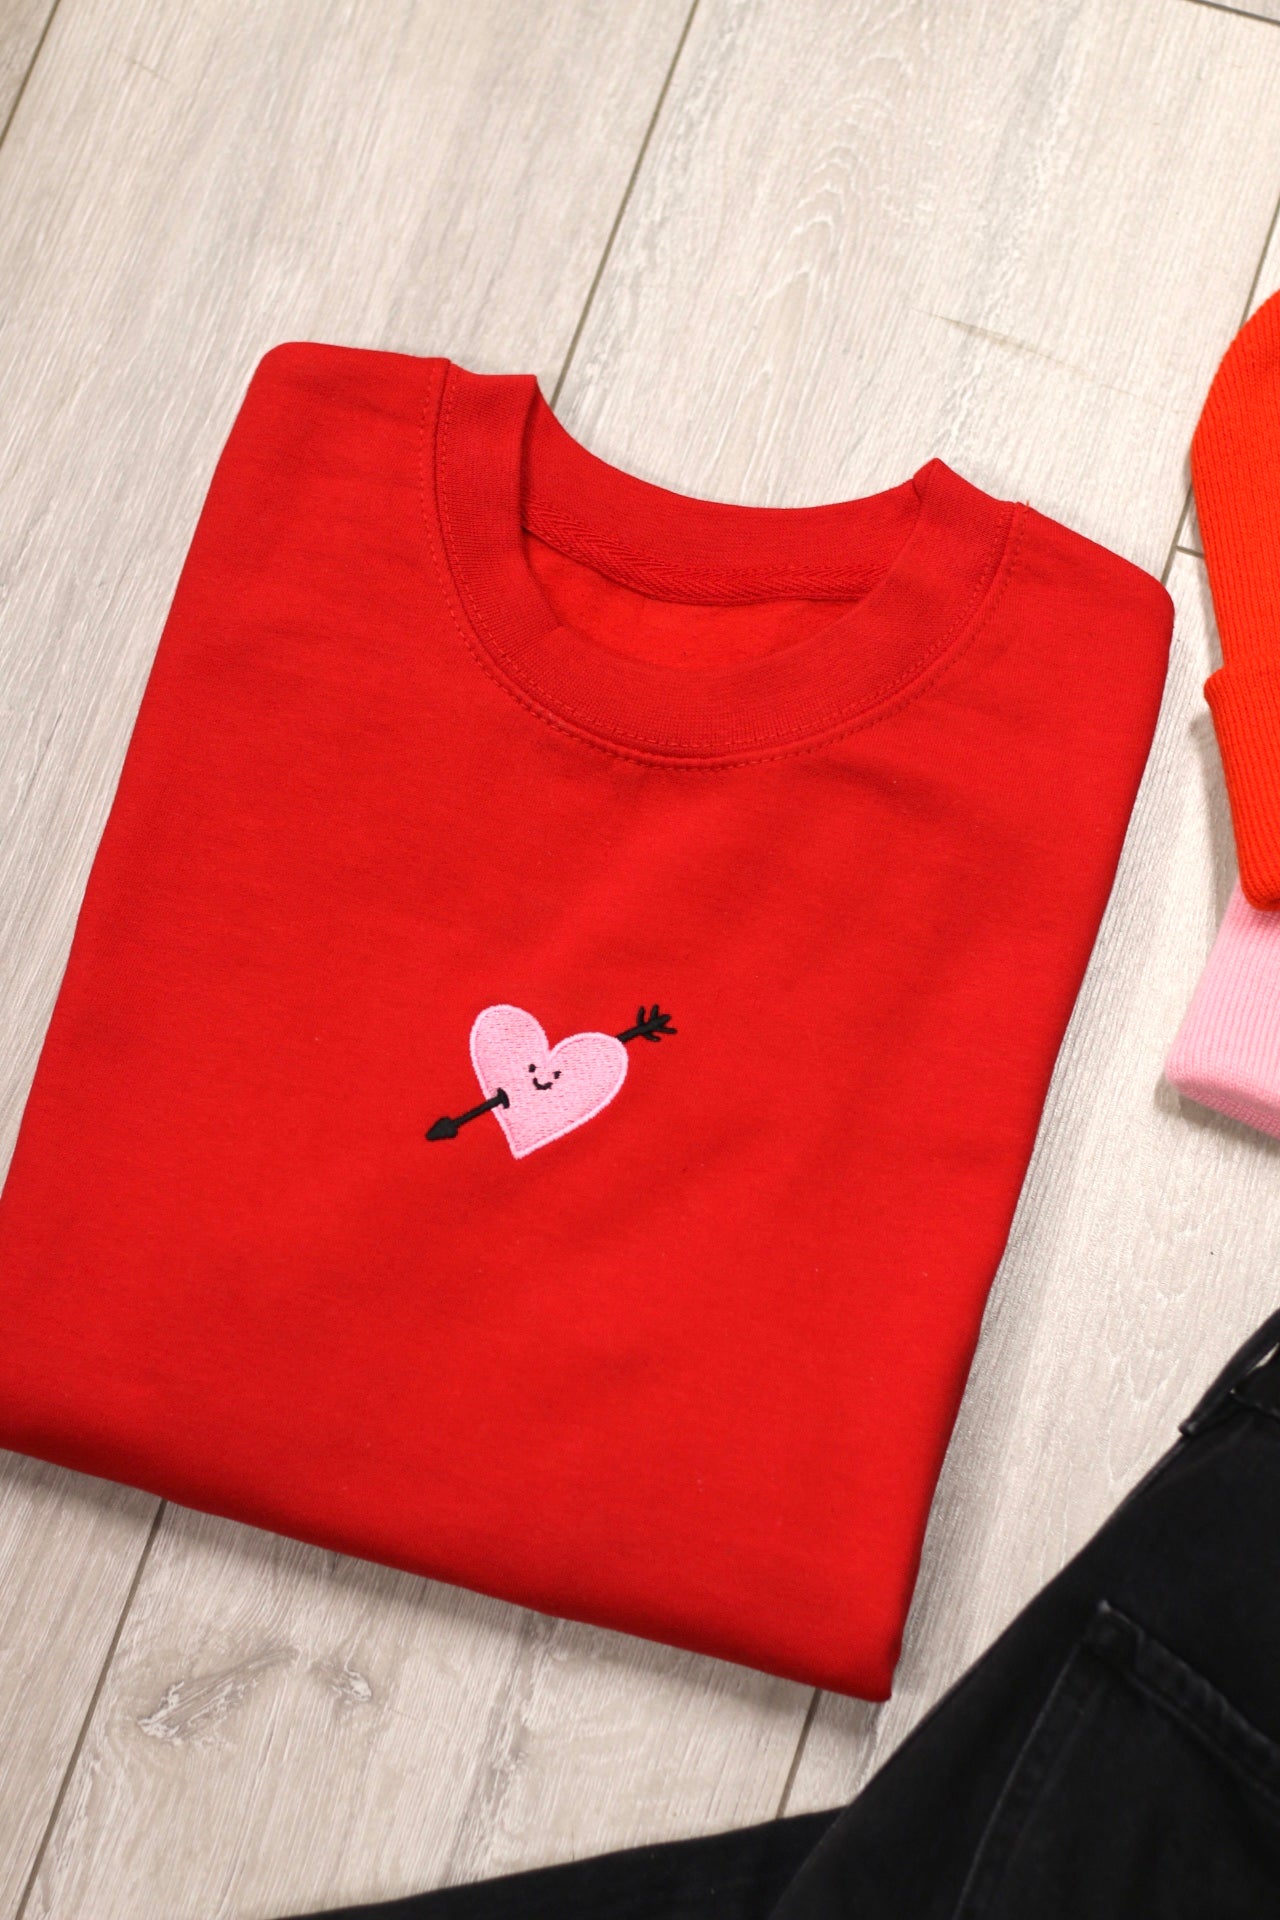 Cupids Heart Tee, Hoodie or Sweatshirt